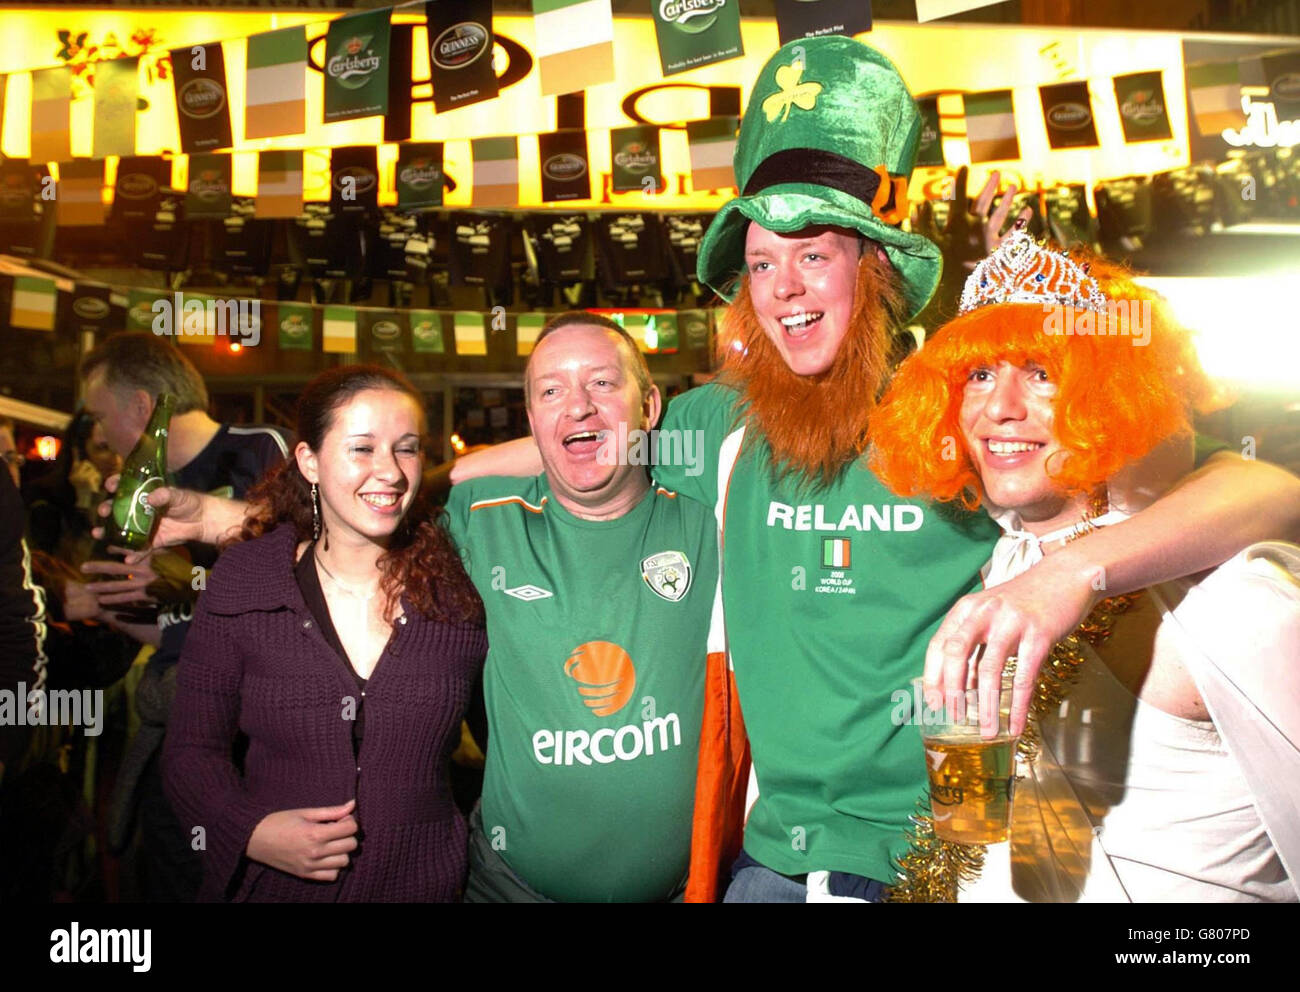 Calcio - FIFA World Cup Qualifier - Gruppo quattro - Israele / Rep of Ireland - Fans - Mike's Place. I tifosi della Repubblica d'Irlanda festeggiano con gli israeliani. Foto Stock